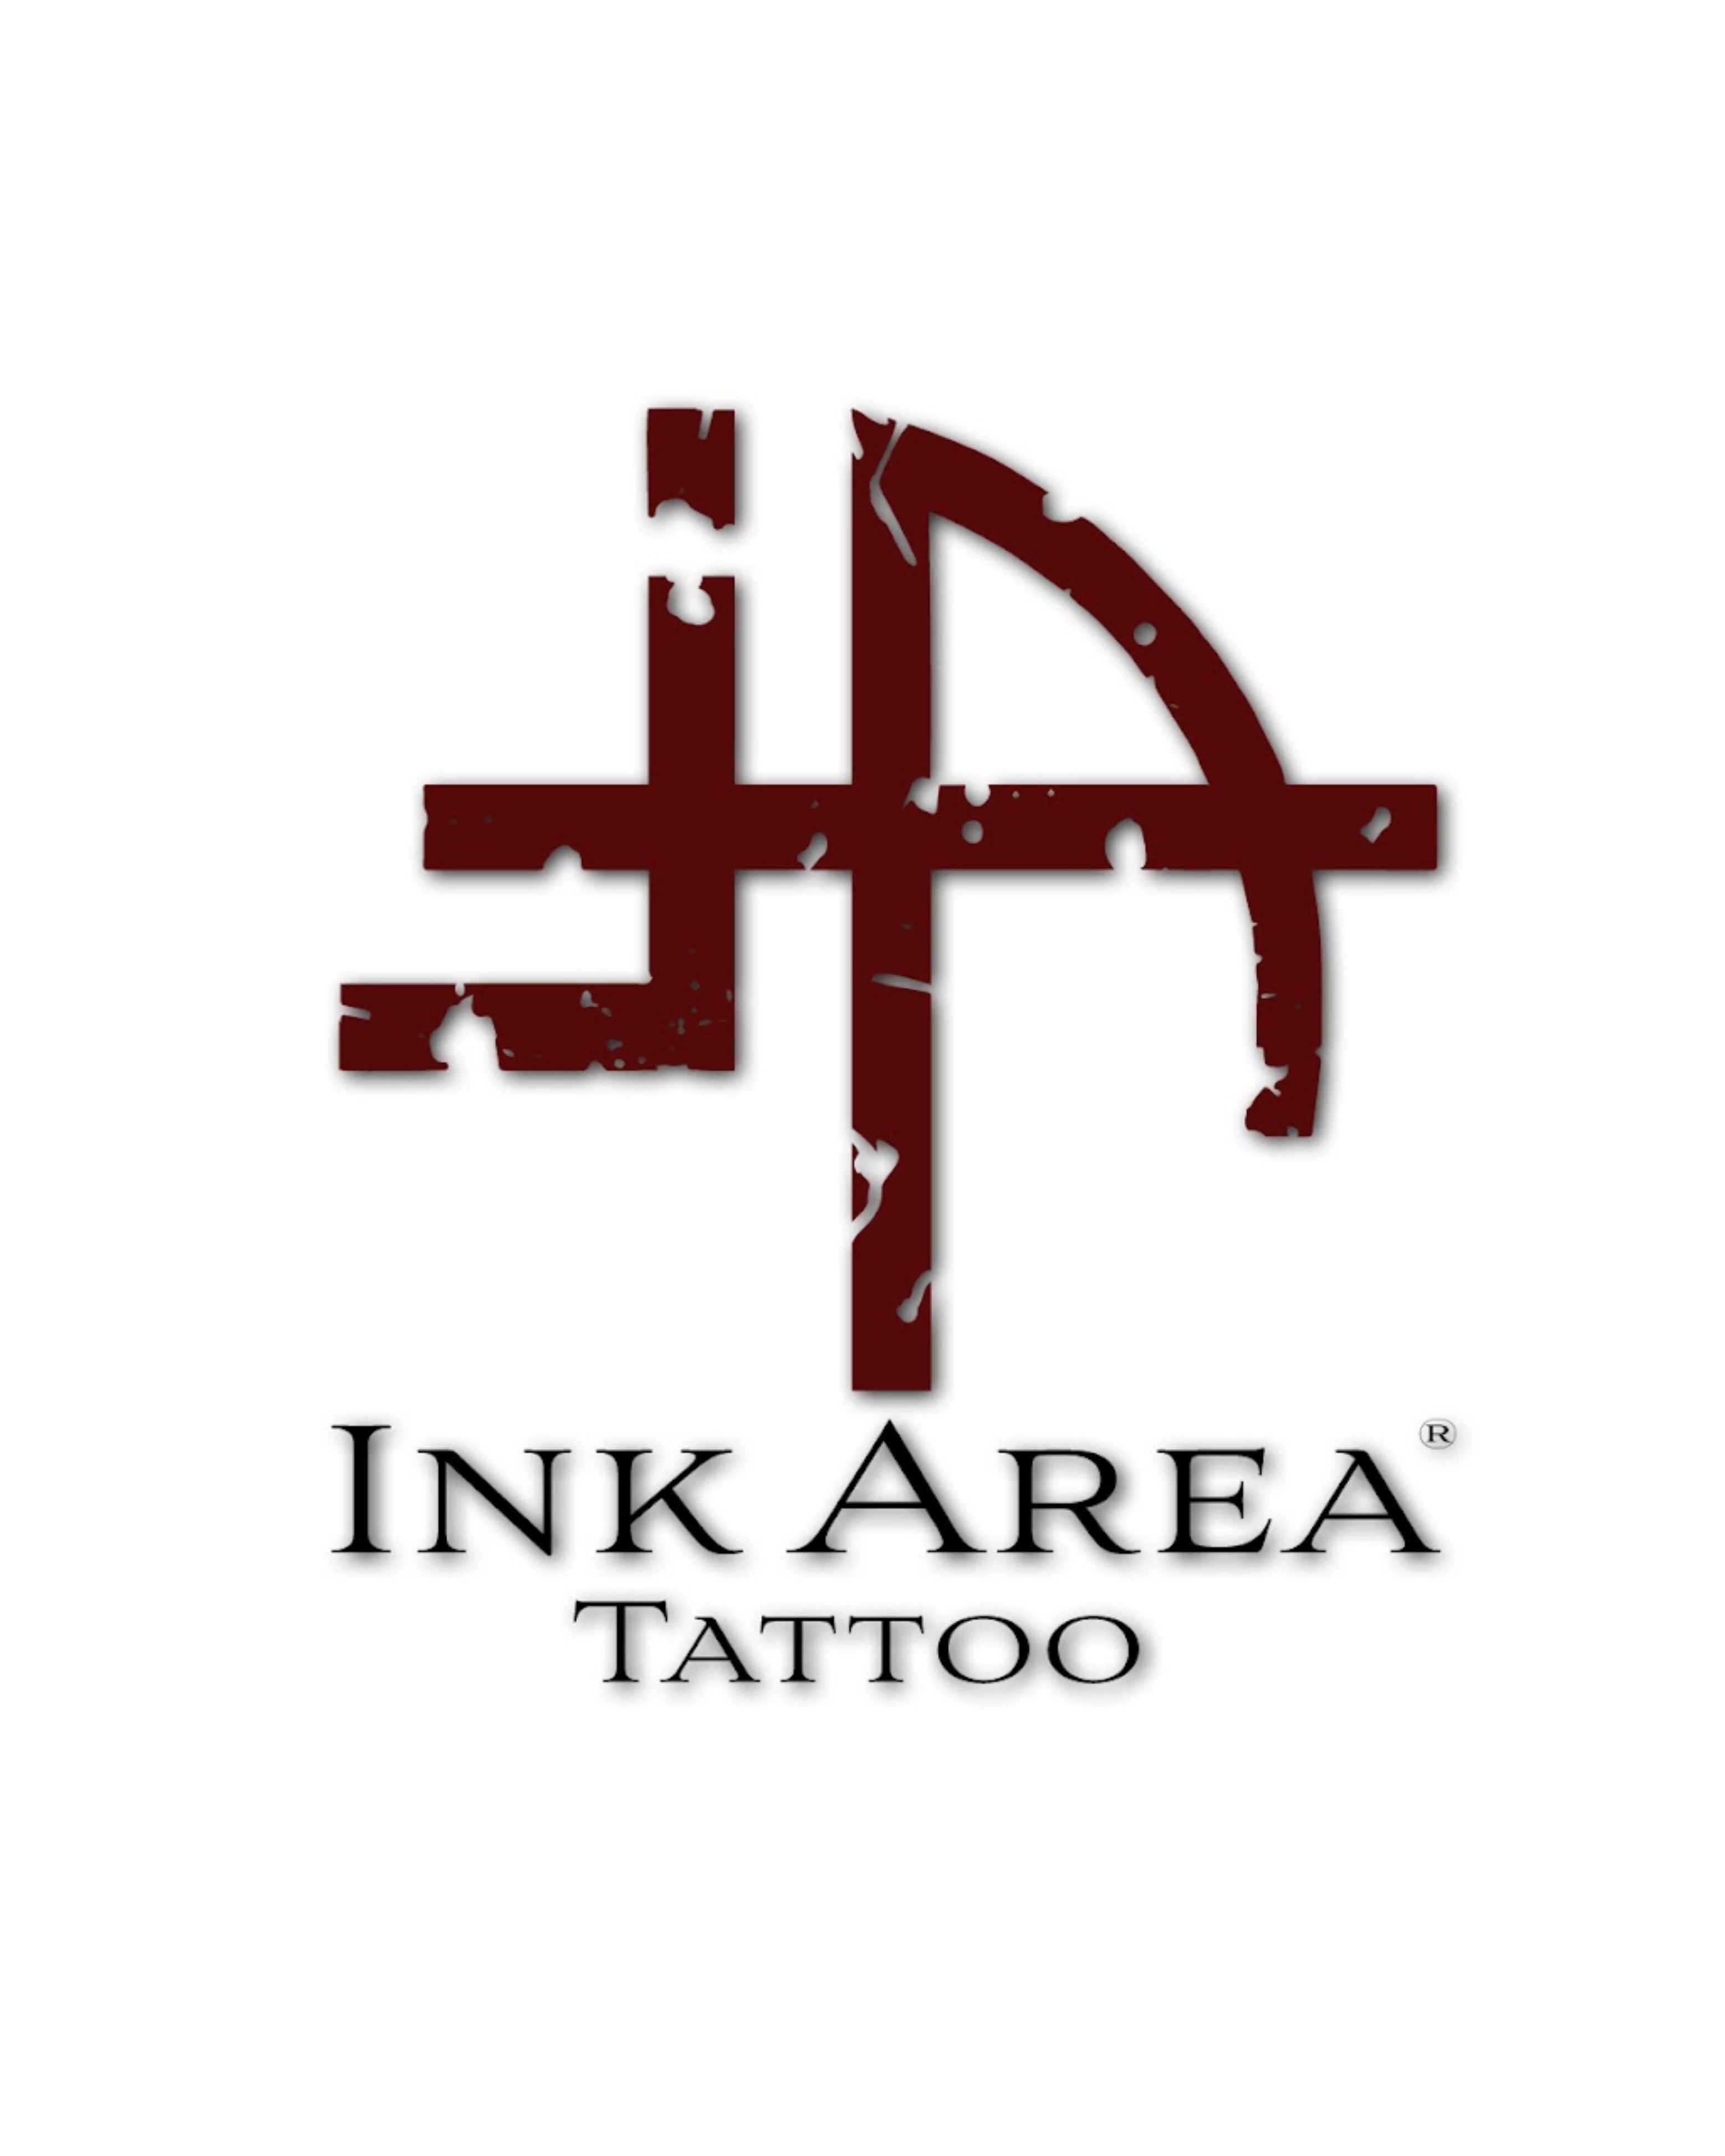 www.inkarea.tattoo